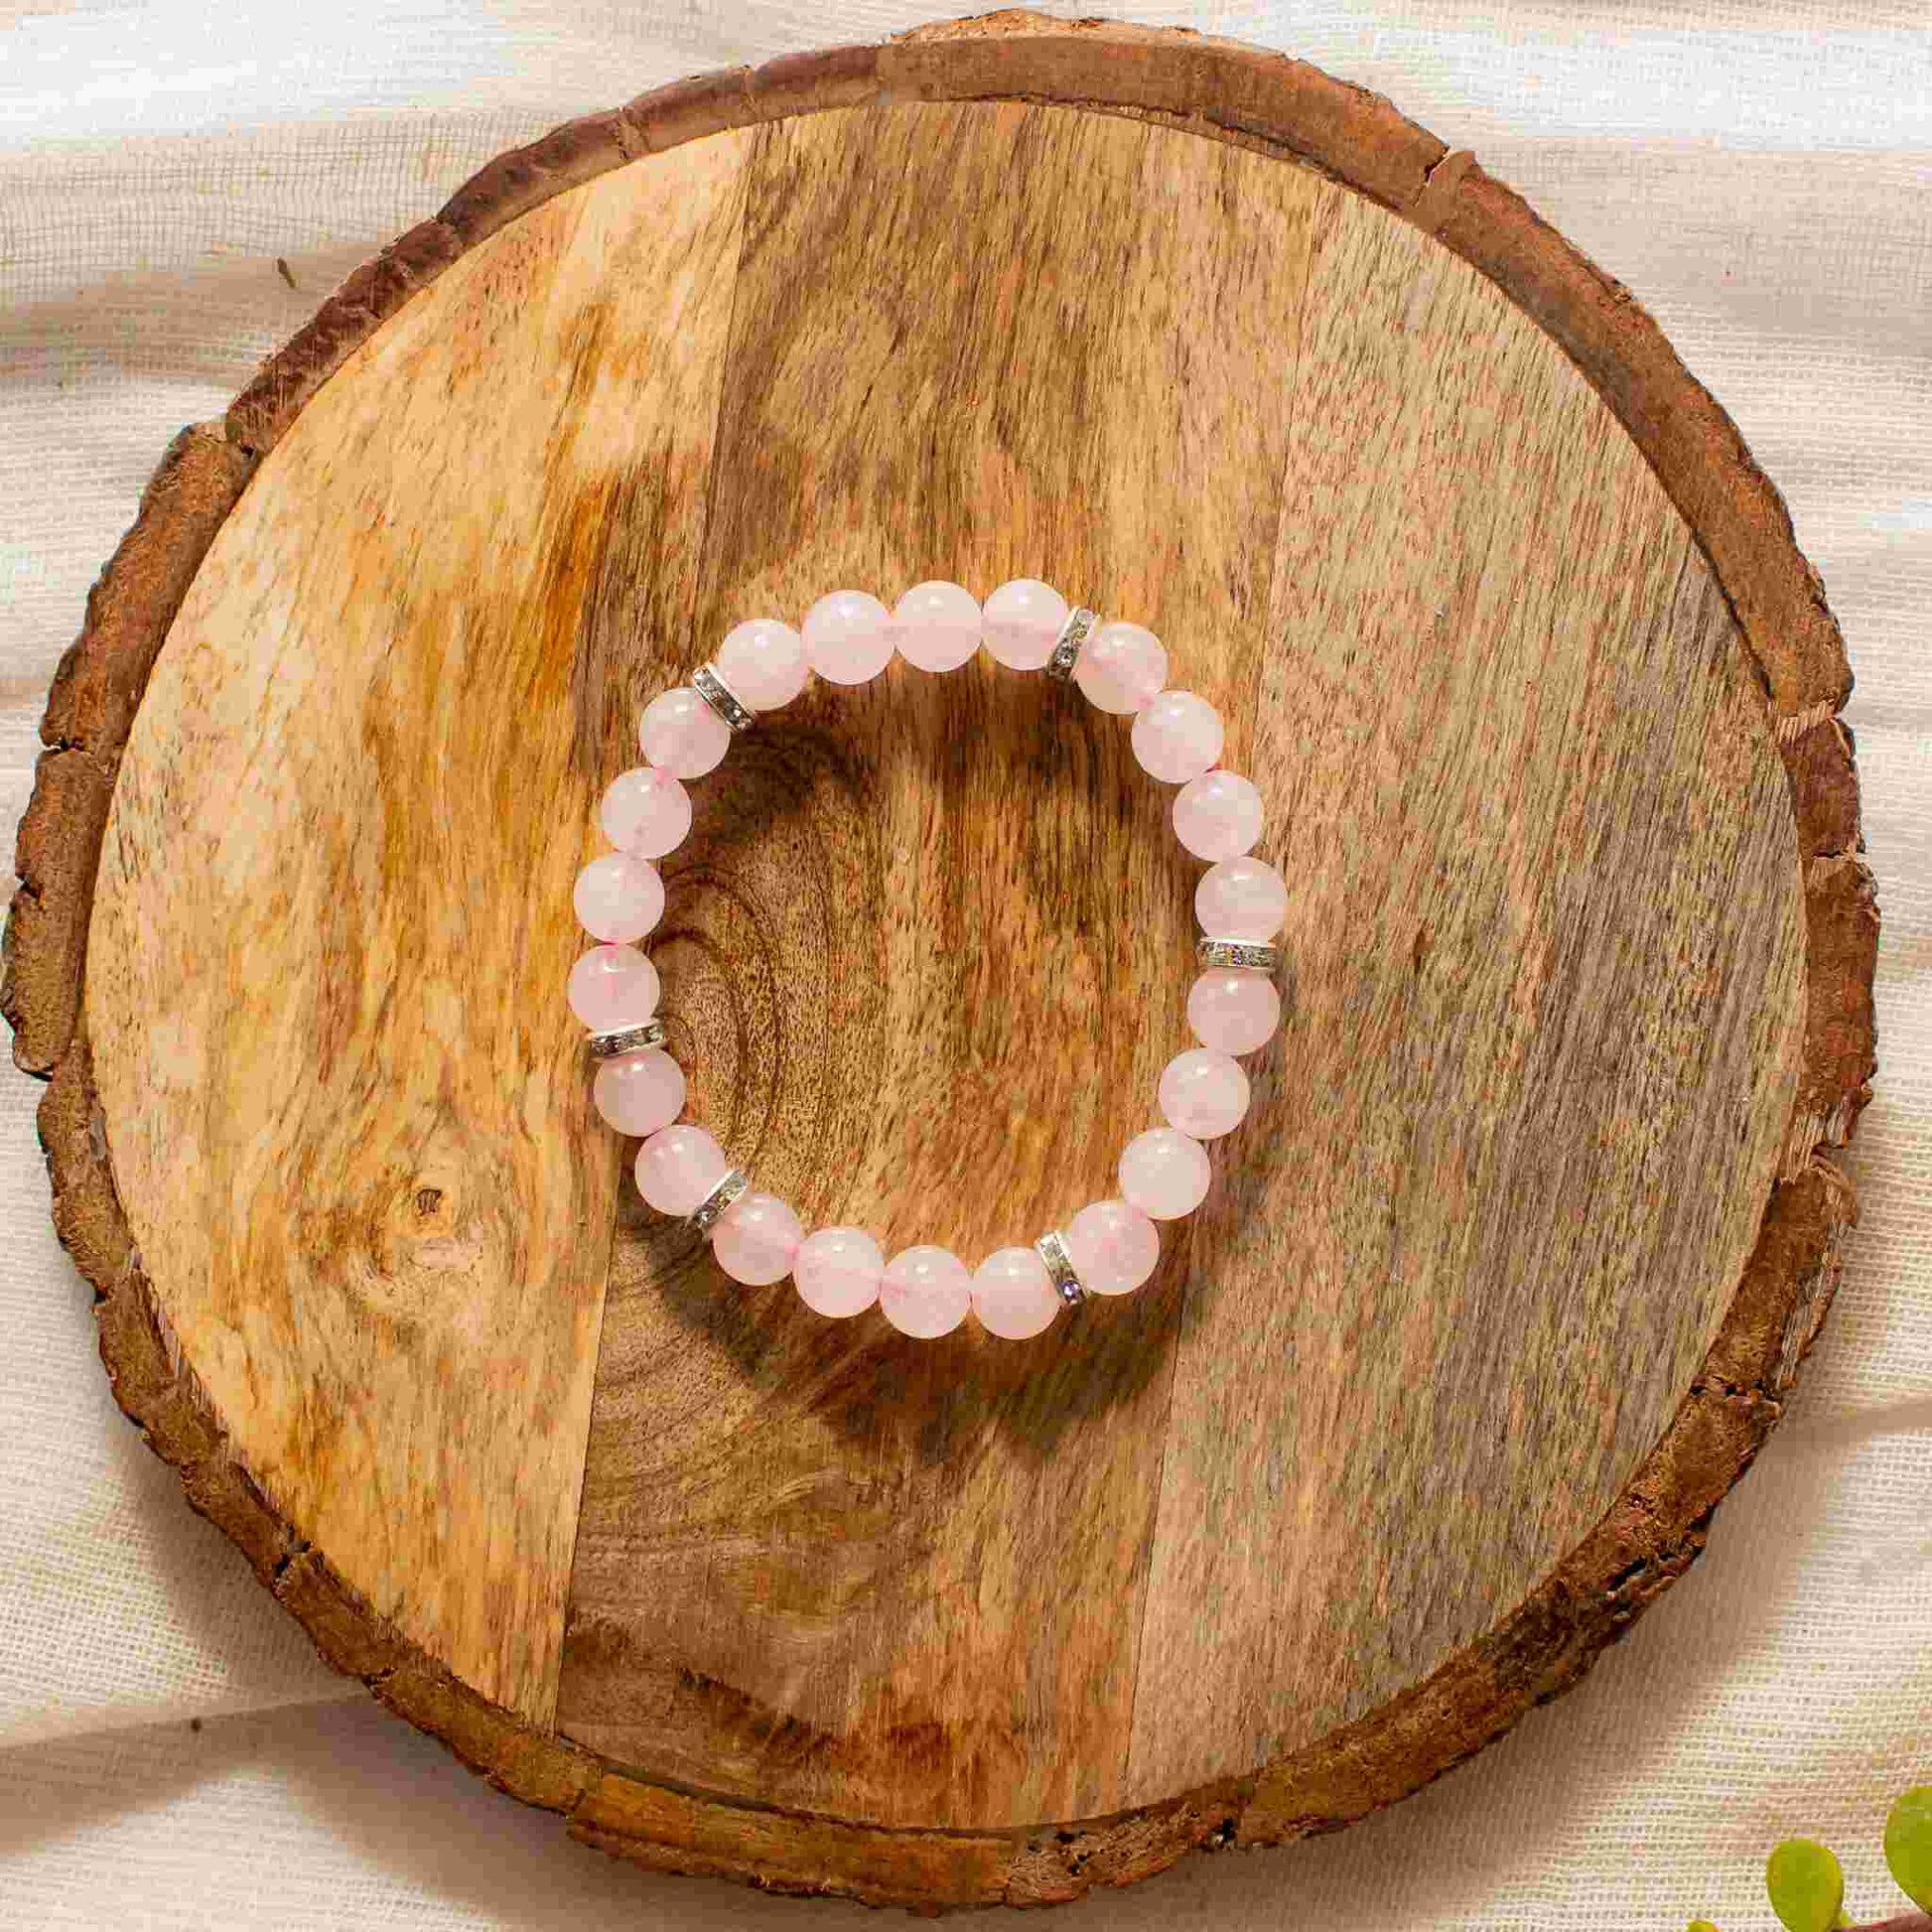 rose quartz bracelet for ladies